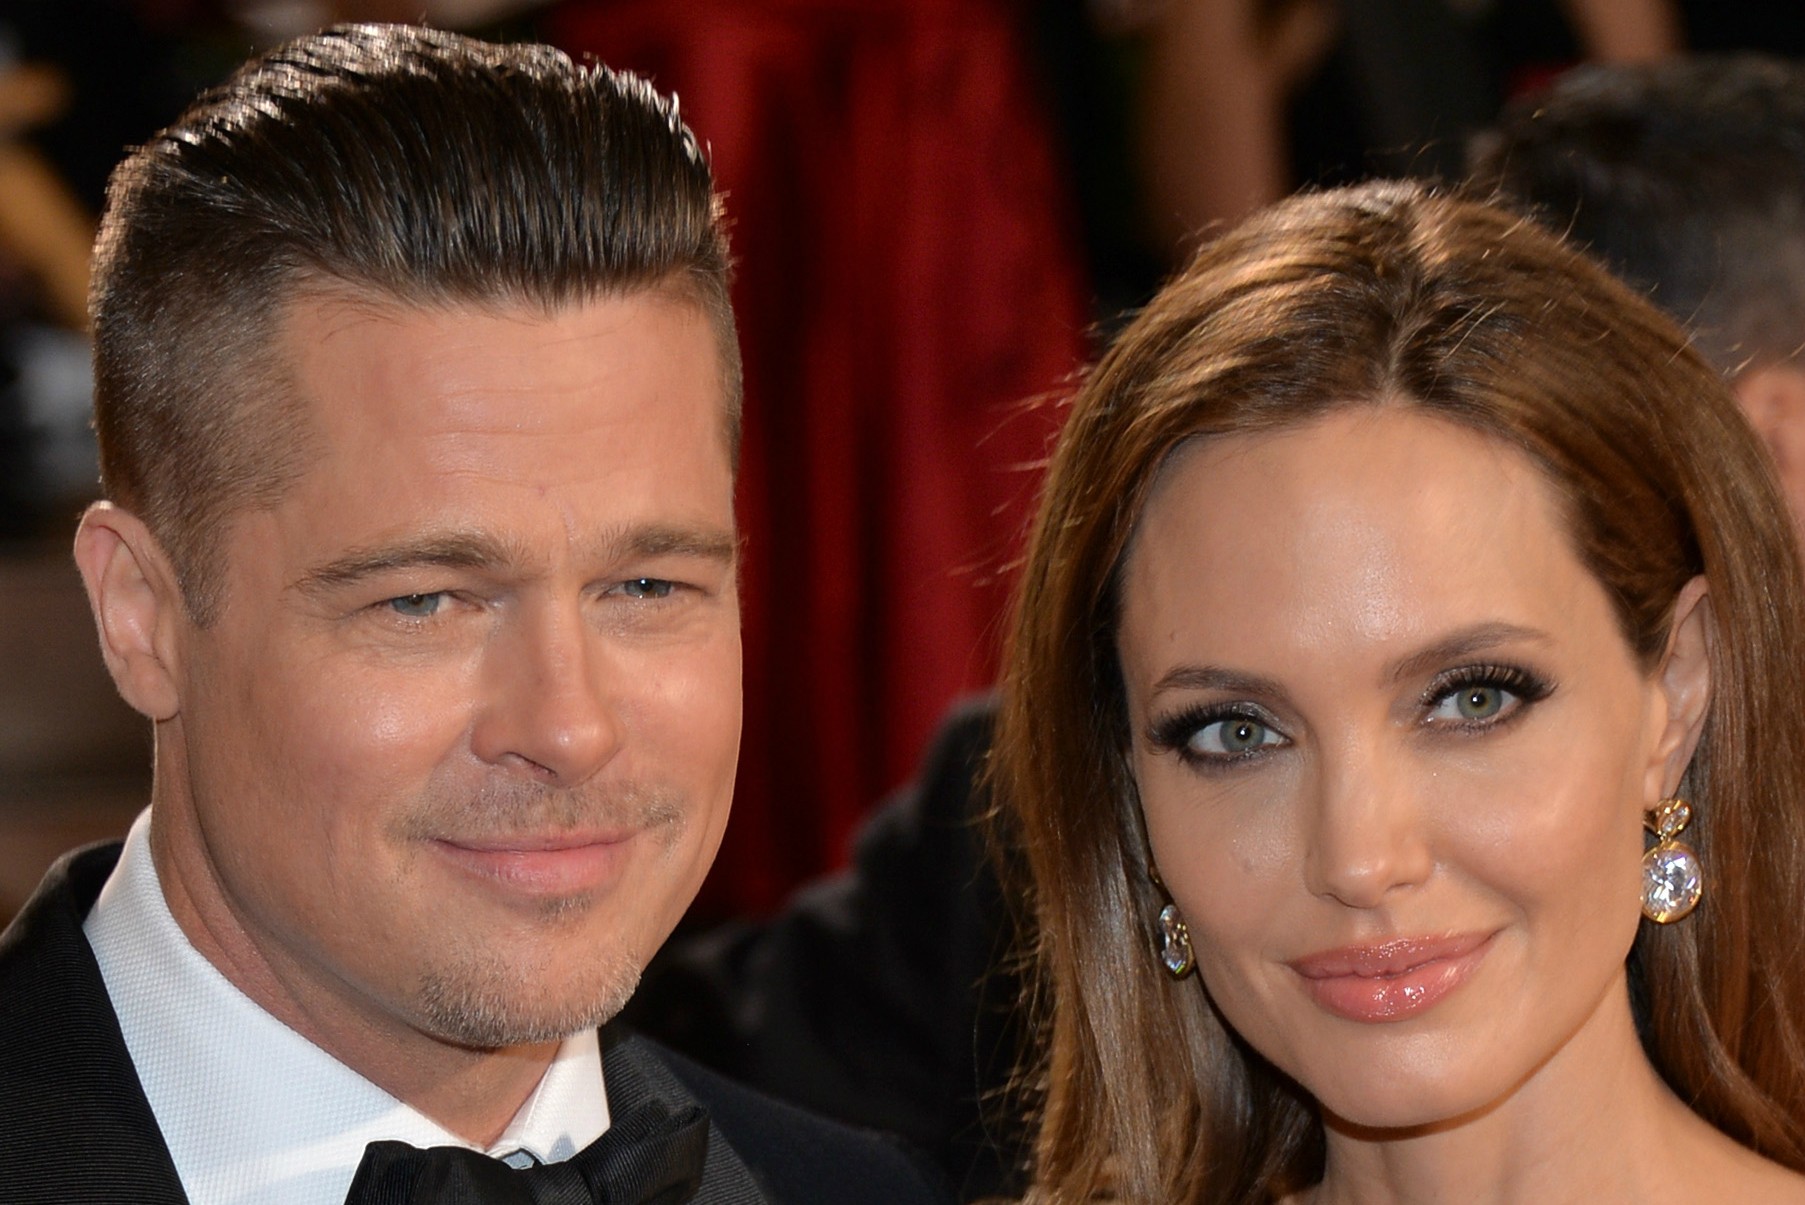 Alguma lista de mais sexy fica completa sem eles? Os atores Brad Pitt e Angelina Jolie. (Foto: Getty Images)